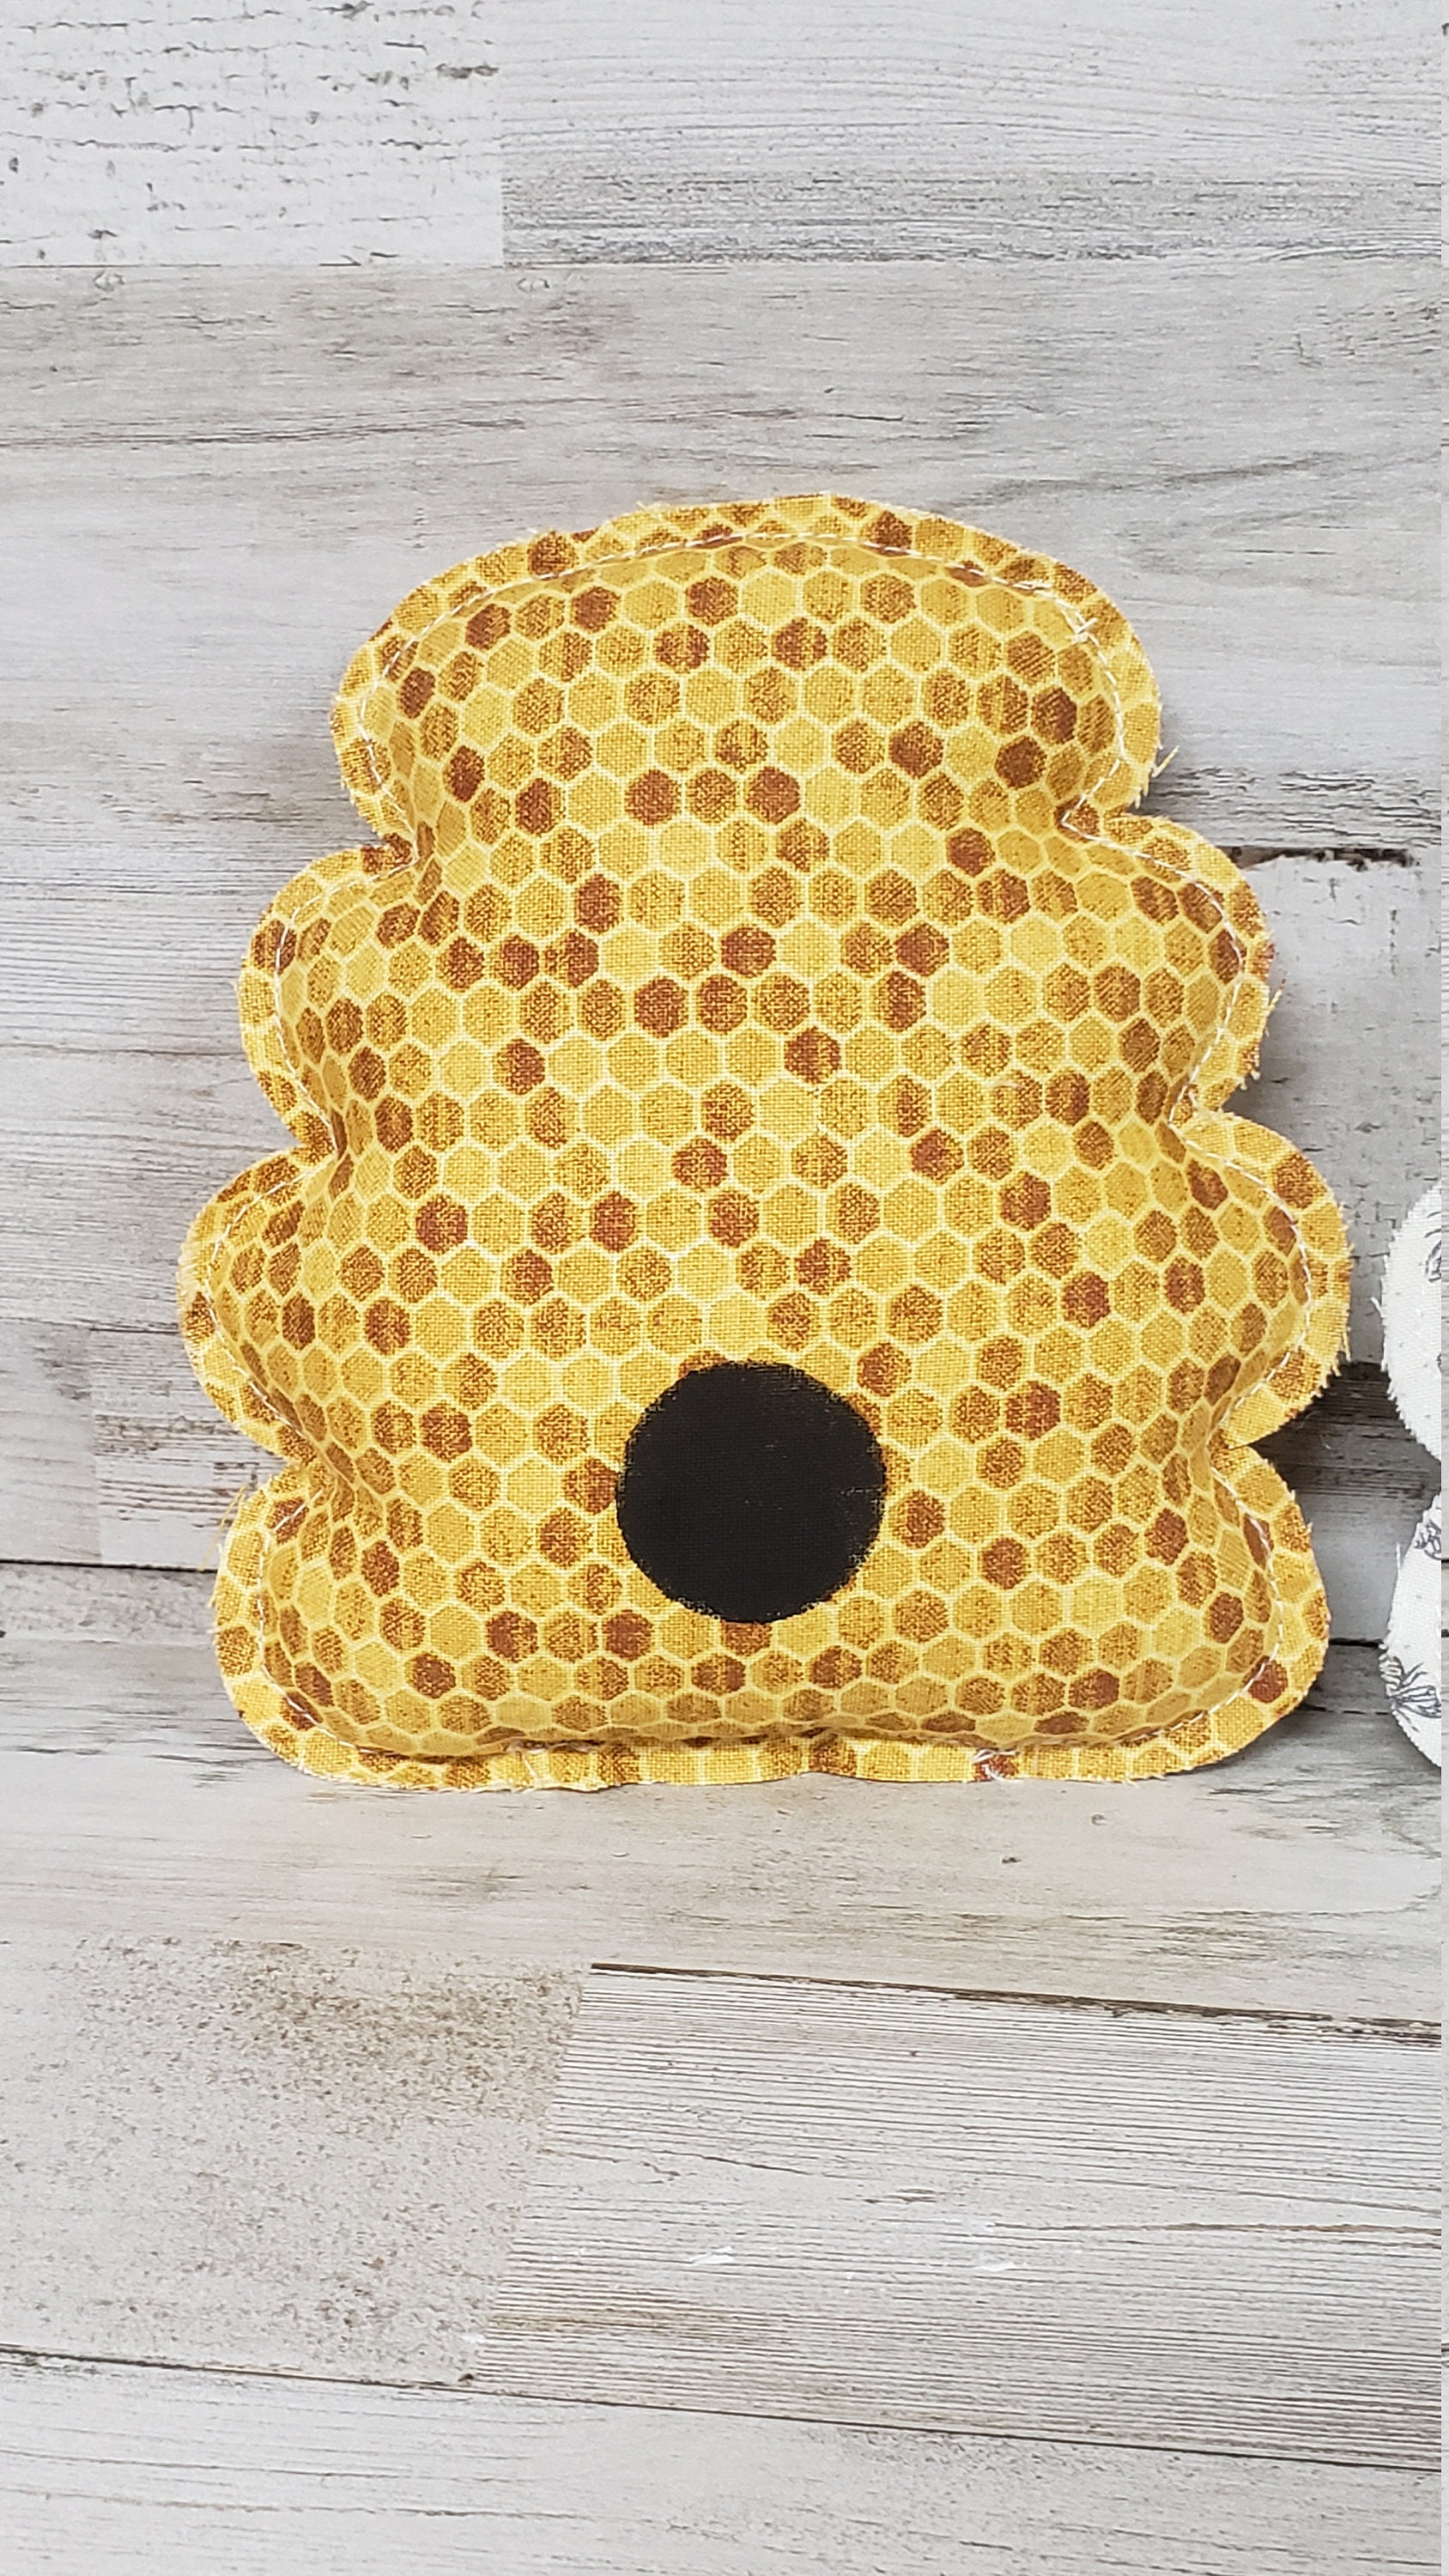 Honey Bee Tiered Tray / Honey Bee Decor / Honey Decor /bee Tier Tray /  Farmhouse Kitchen / Tier Tray Pillow / Bee Decor / Tiered Tray Filler 